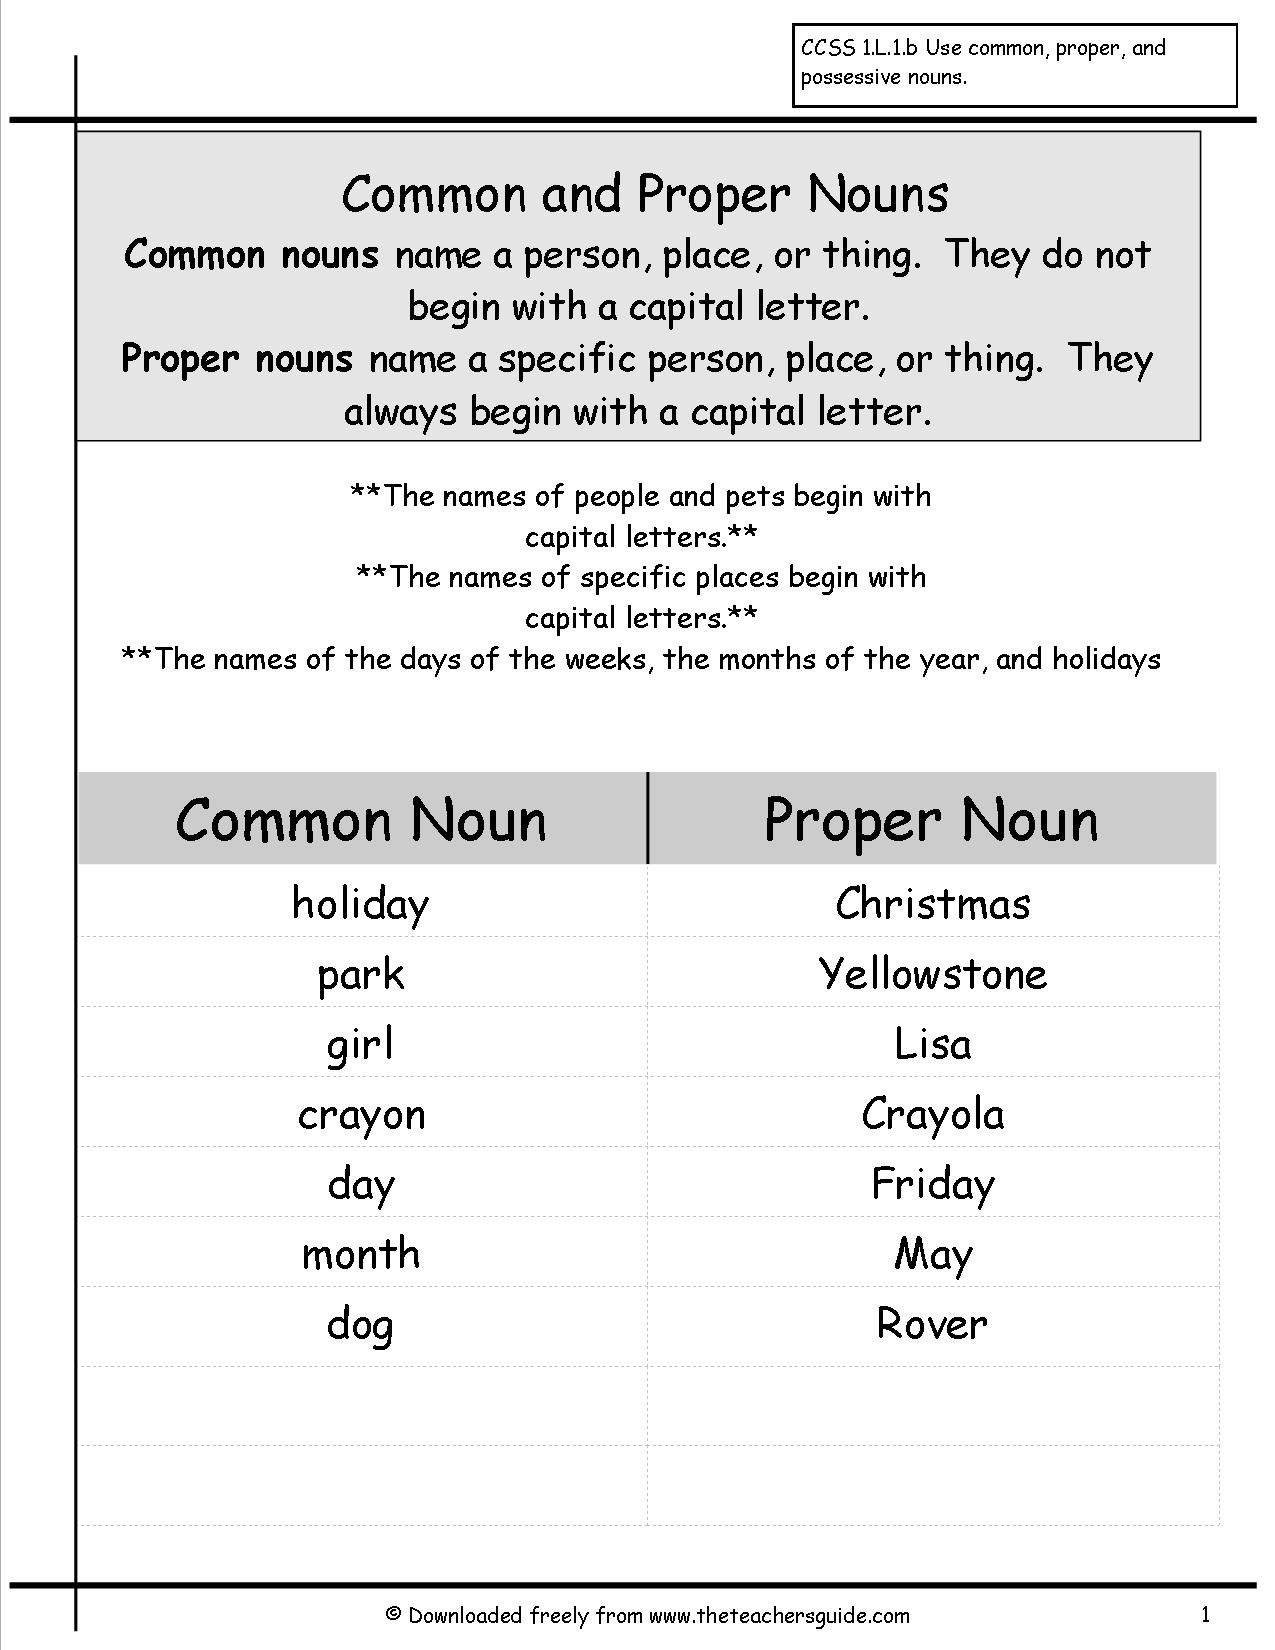 Noun And Proper Noun Worksheet